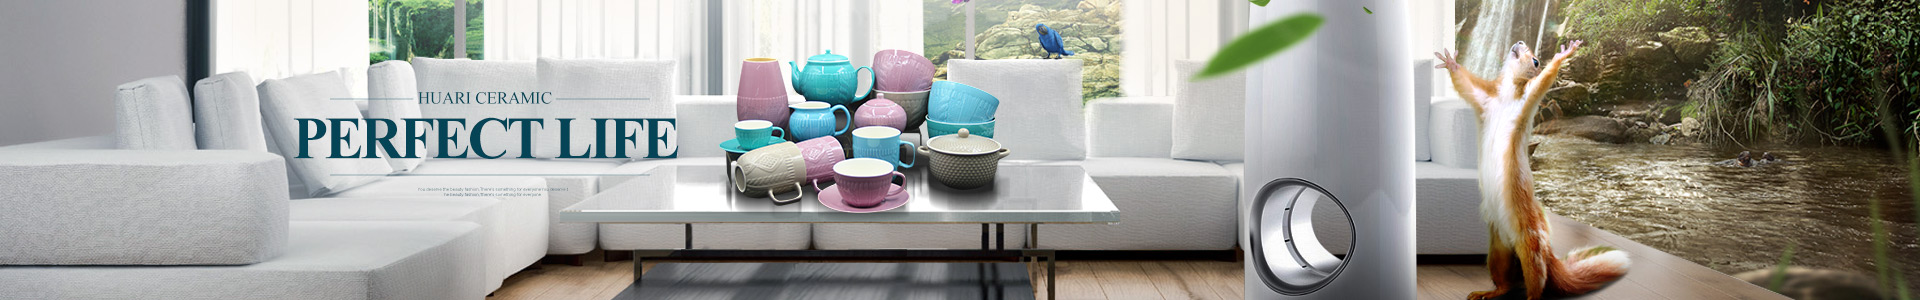 Hunan Huari porcelain Co., Ltd